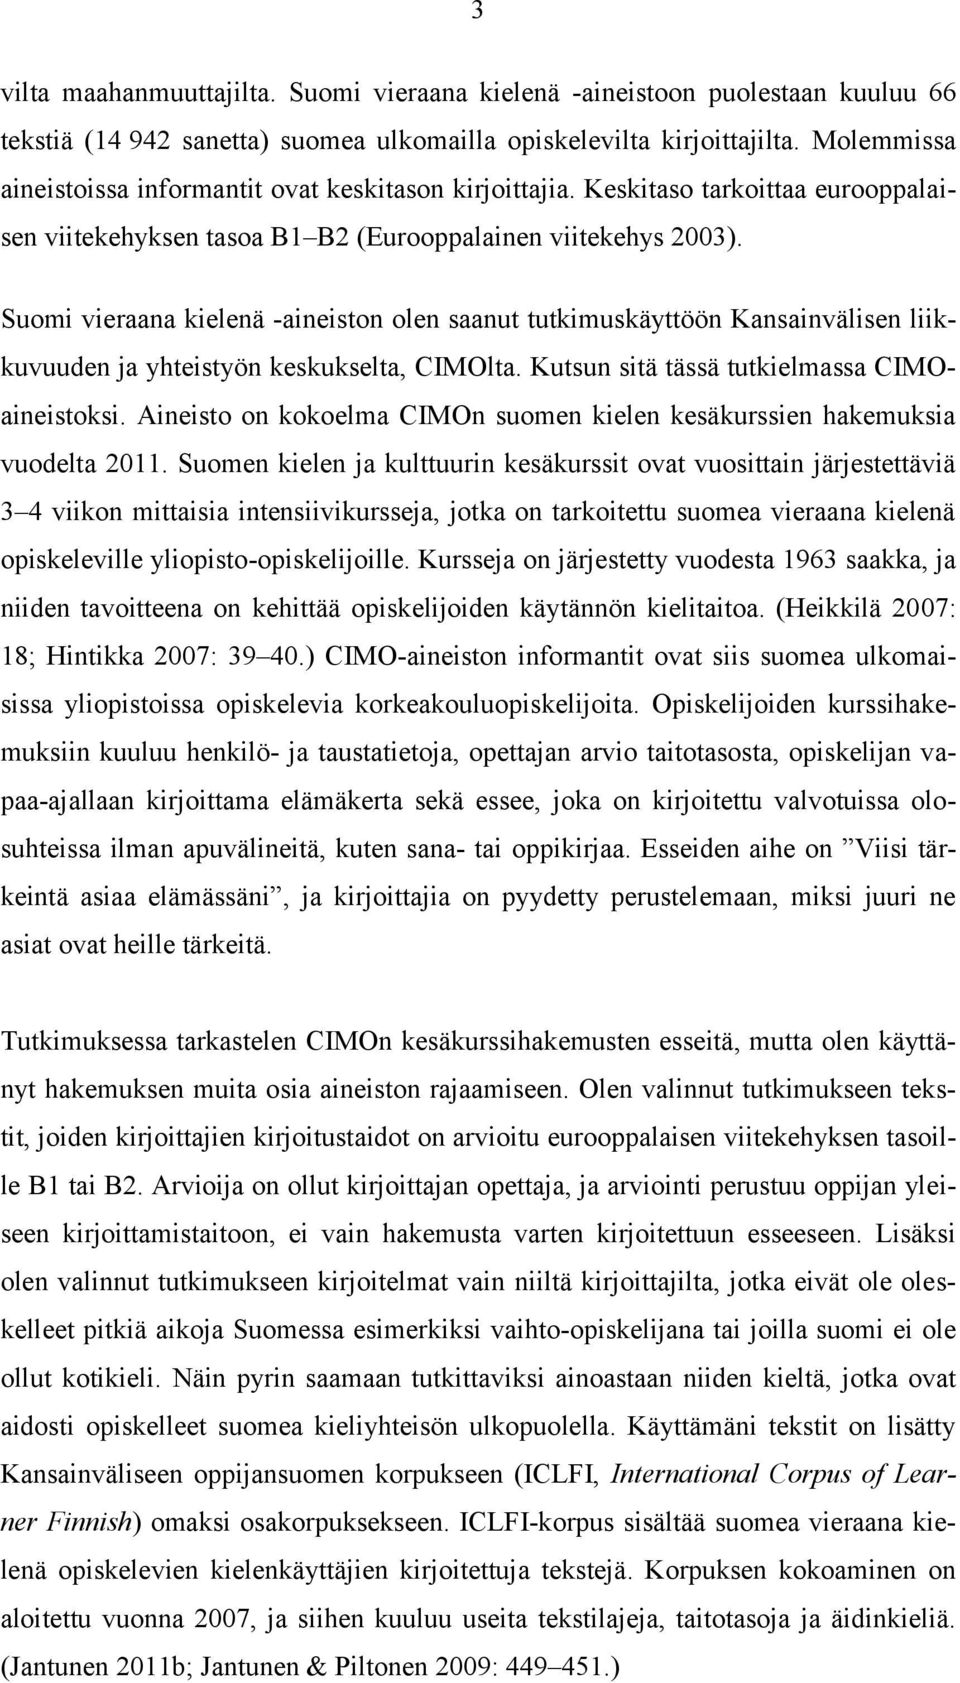 Suomi vieraana kielenä -aineiston olen saanut tutkimuskäyttöön Kansainvälisen liikkuvuuden ja yhteistyön keskukselta, CIMOlta. Kutsun sitä tässä tutkielmassa CIMOaineistoksi.